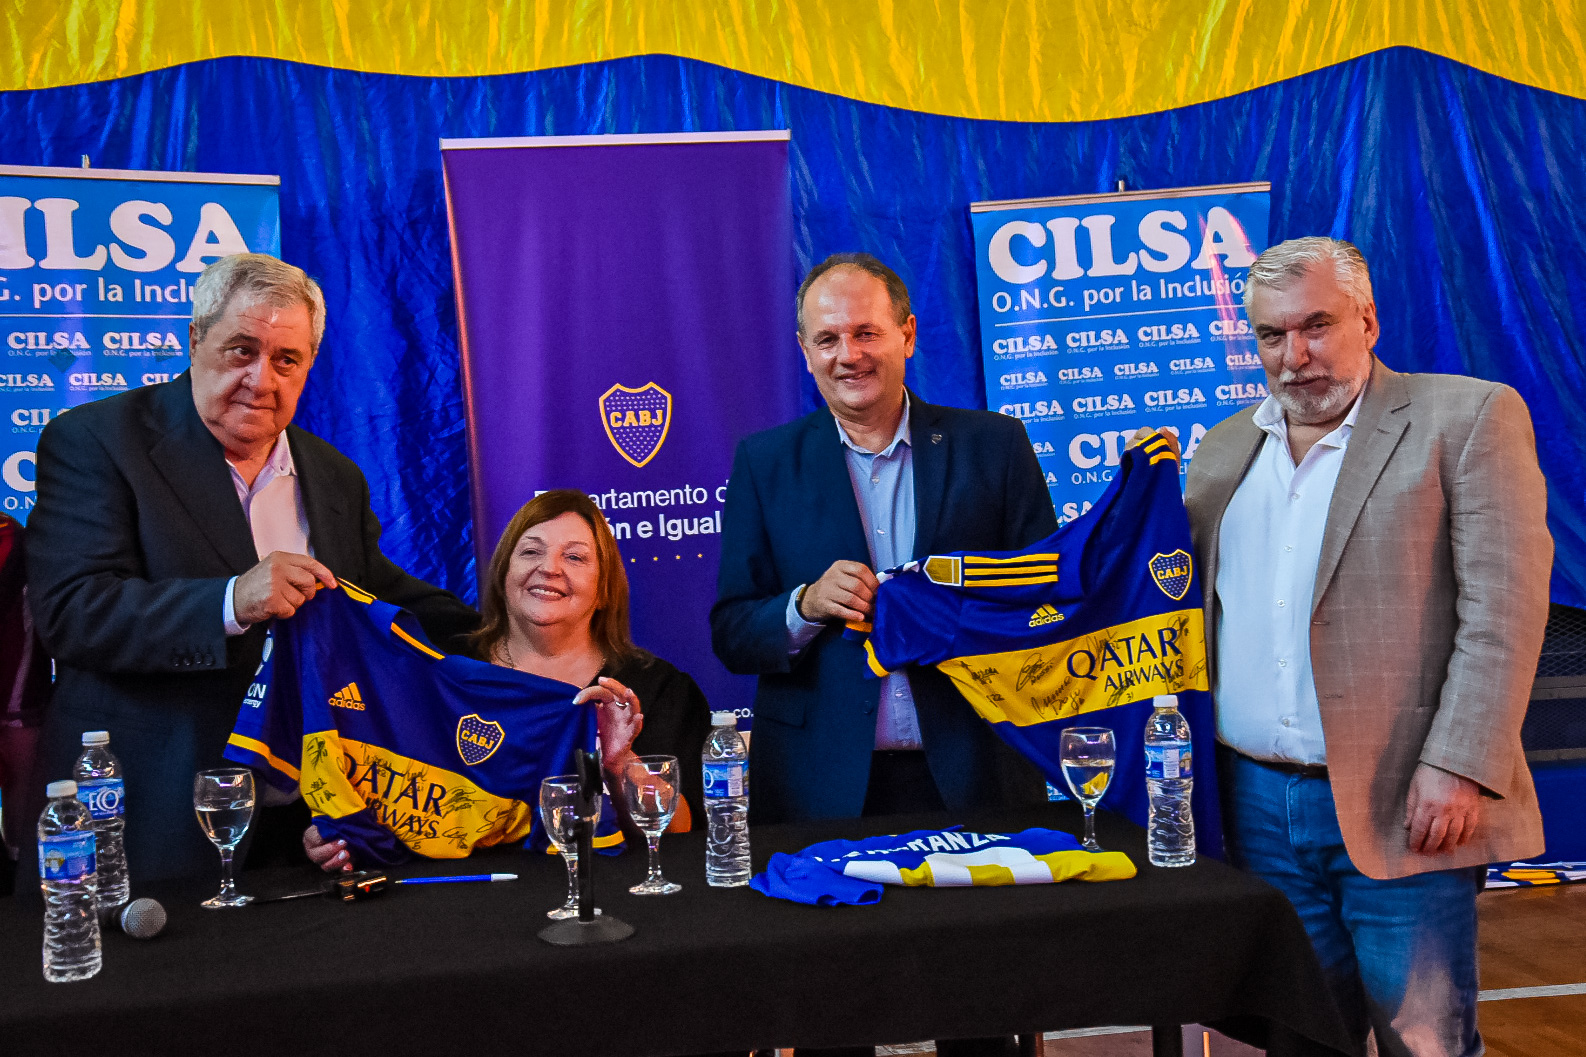 CILSA y Boca Juniors renovaron su alianza y se comprometieron a trabajar por el deporte inclusivo